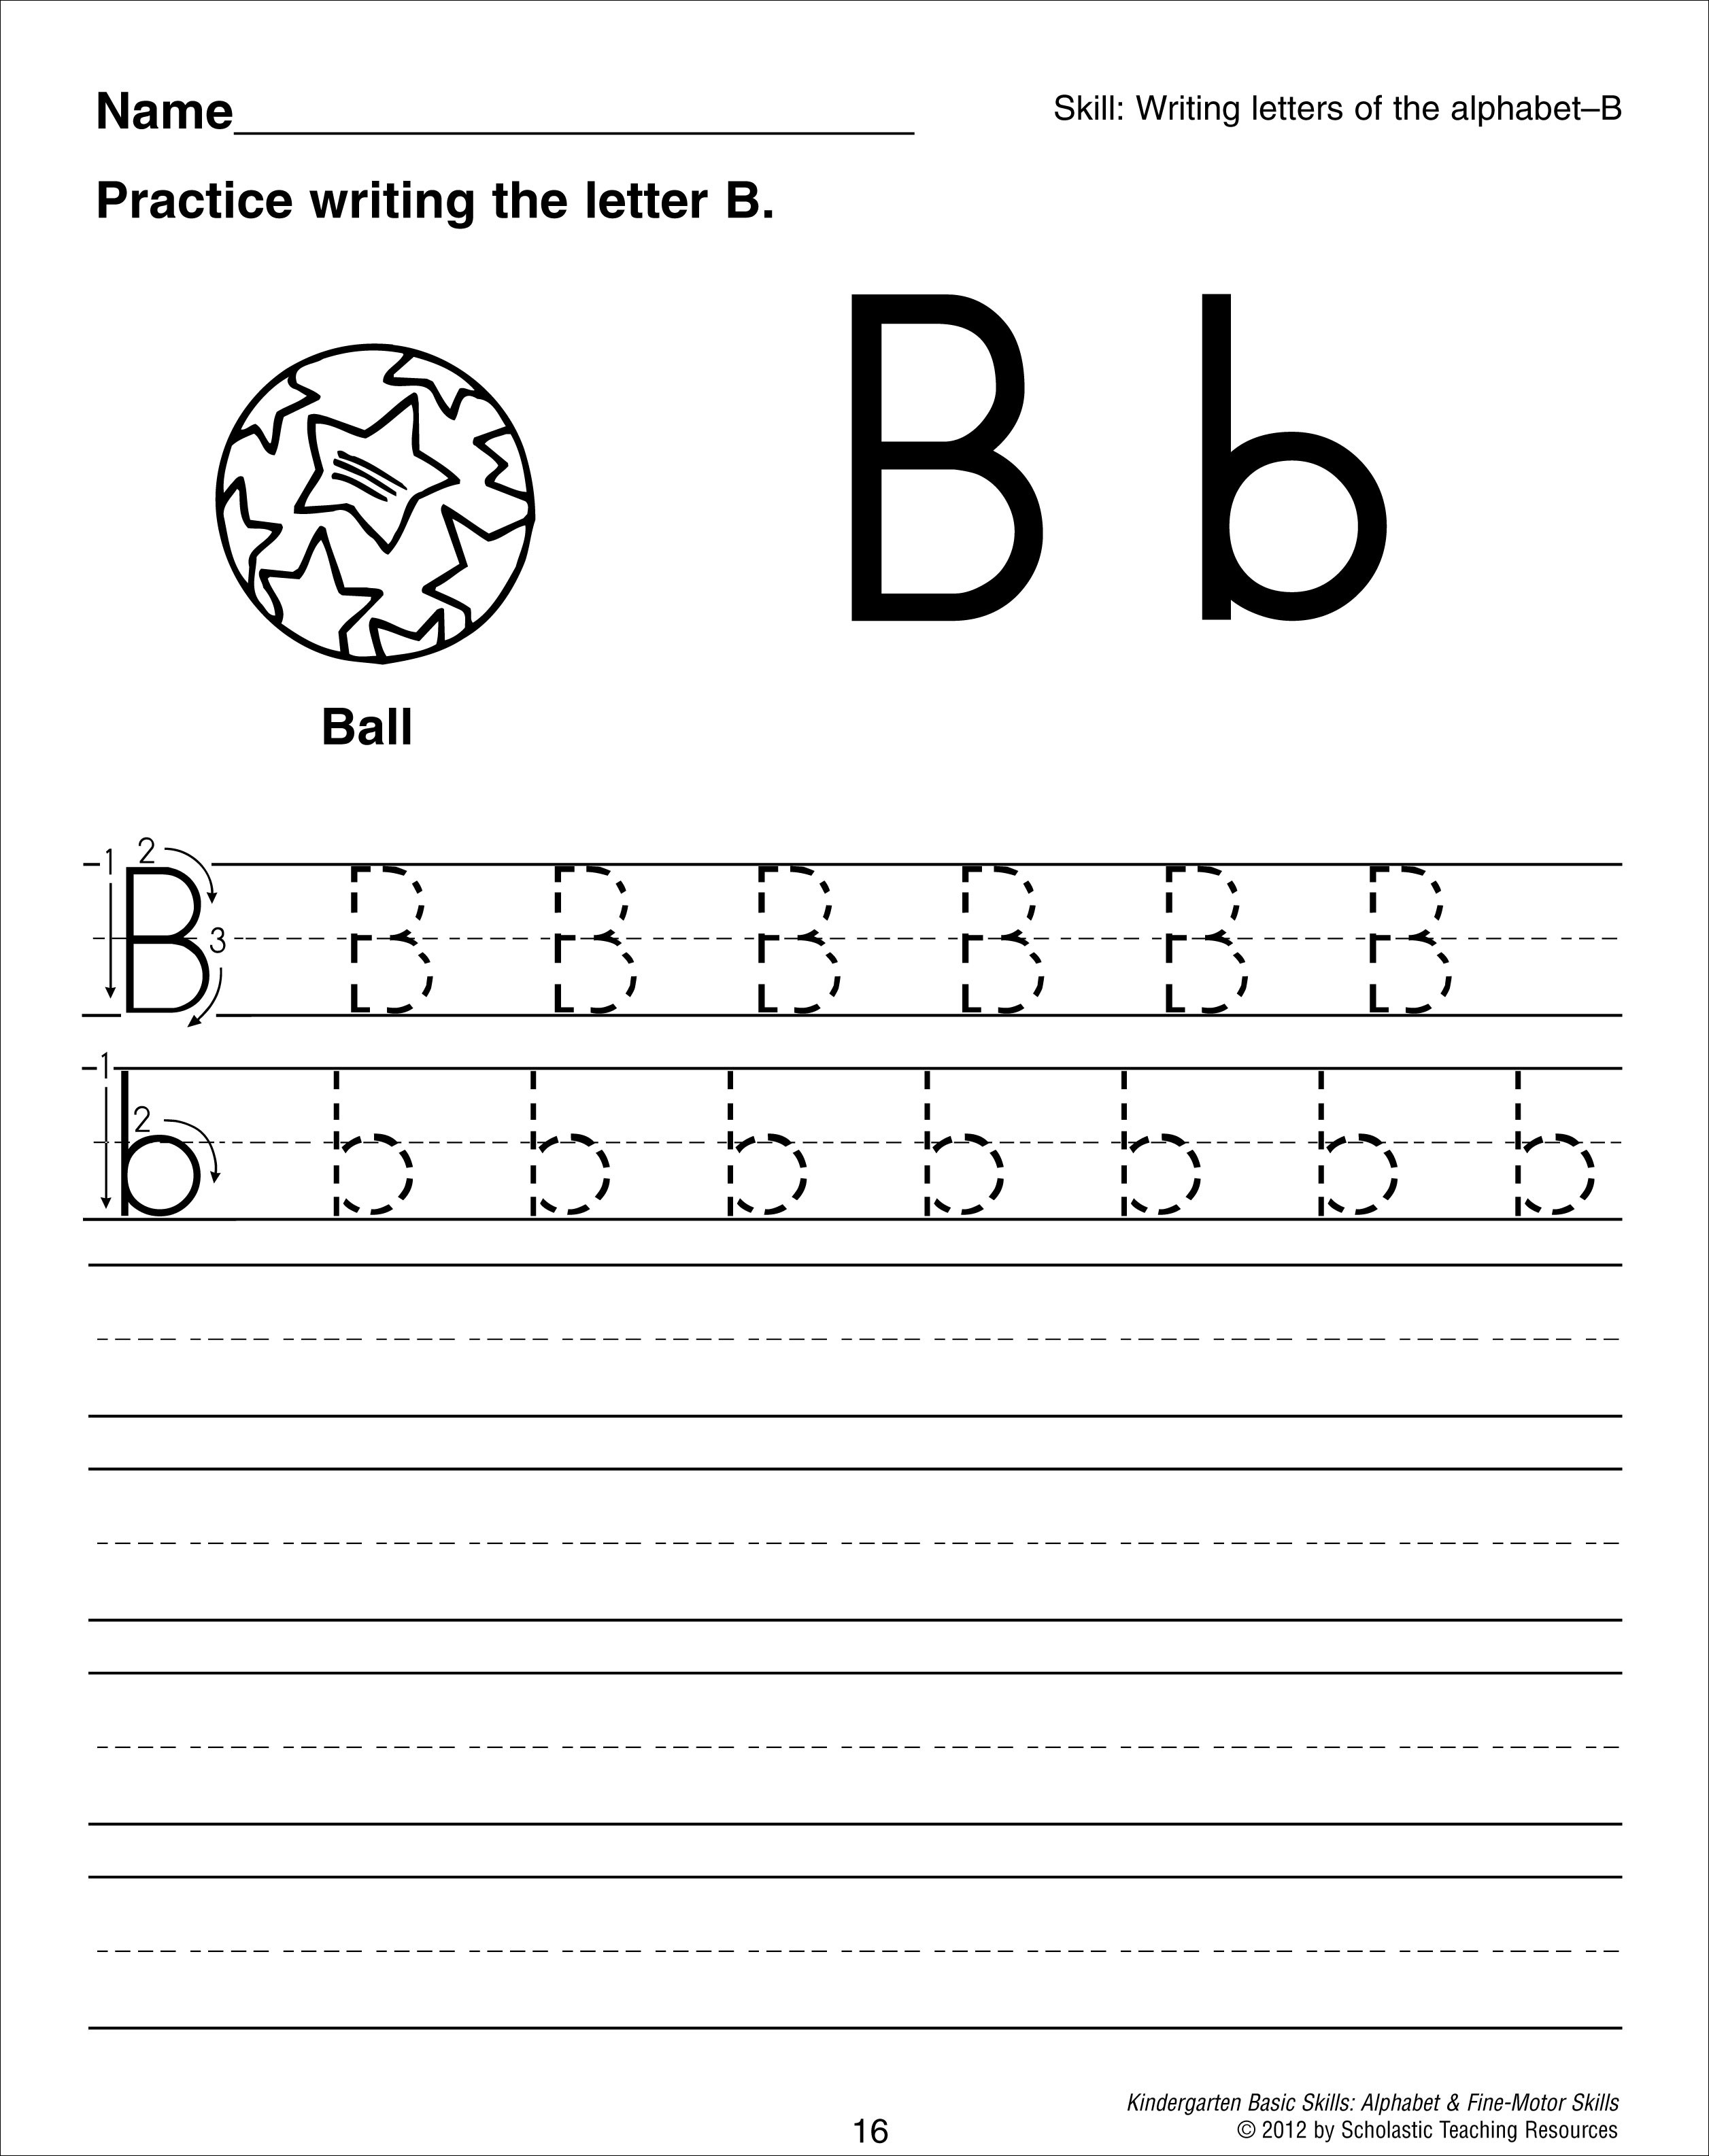 letter-b-coloring-worksheet-free-kindergarten-english-worksheet-for-kids